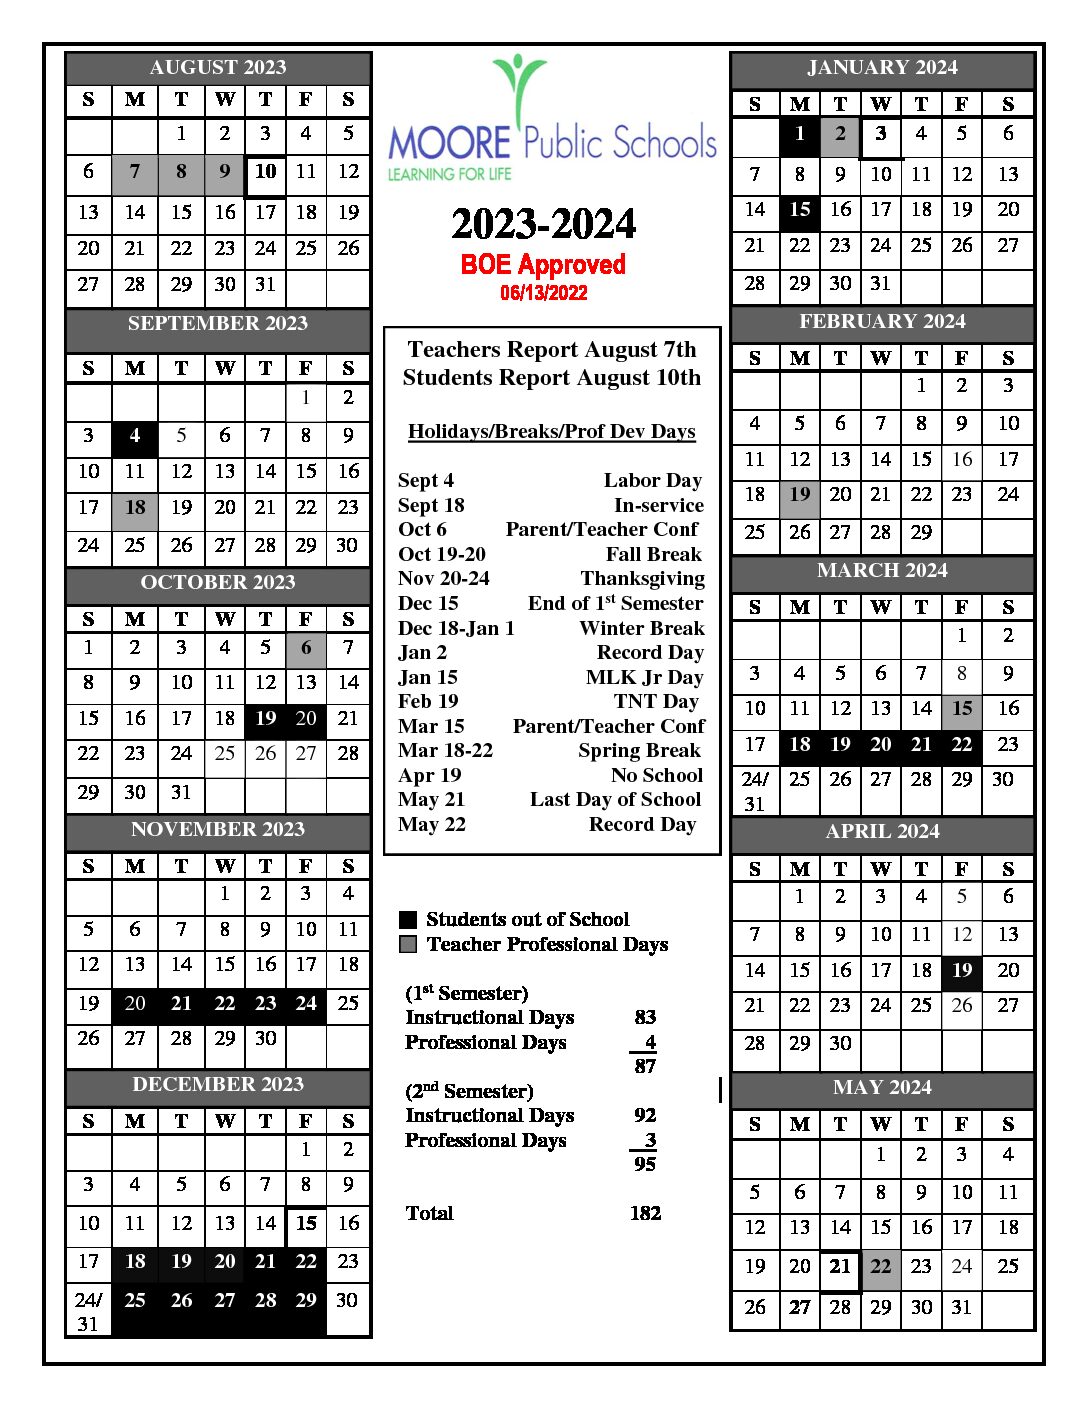 Moore Public Schools Calendar 20232024 in PDF